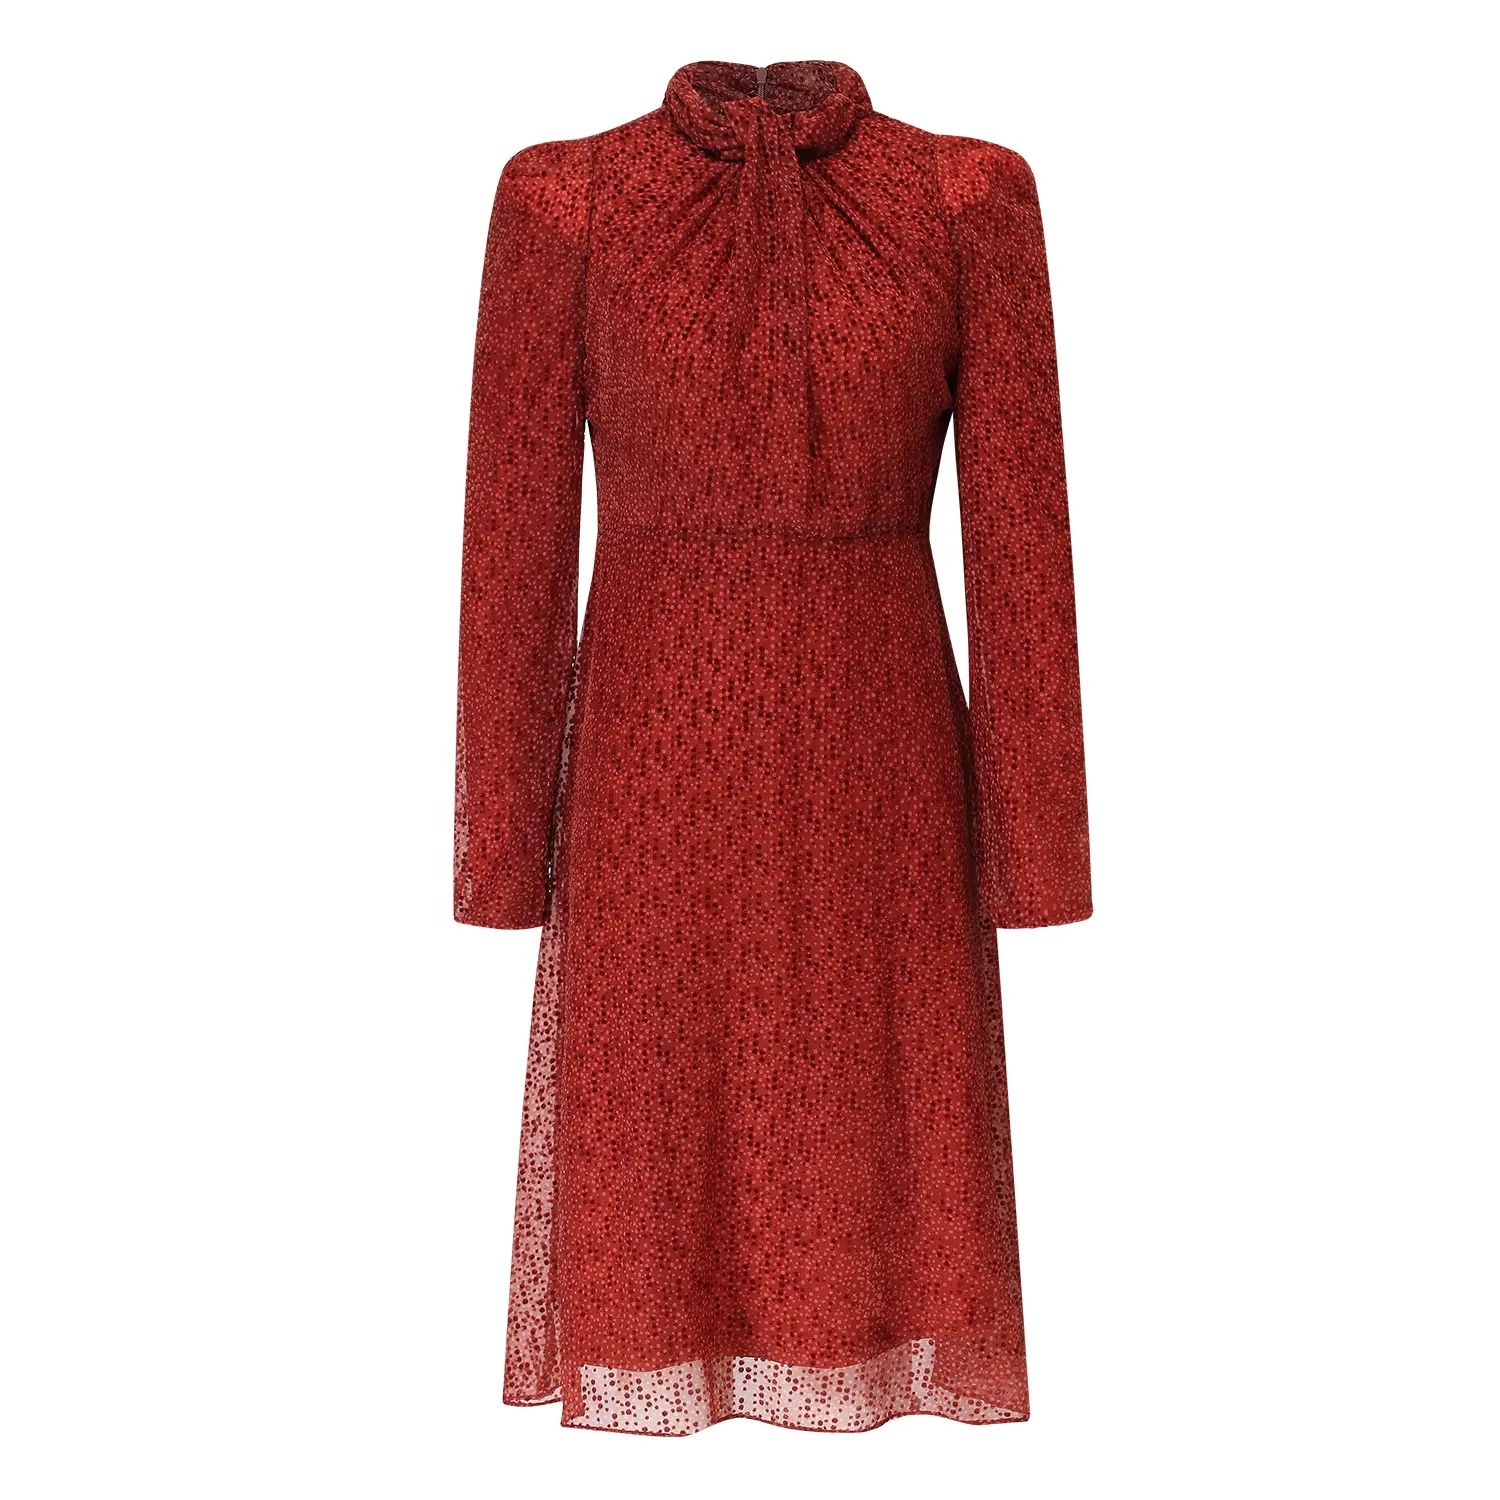 Kendi marka giyim kırmızı baskılı Vintage mezuniyet elbise Polka Dot rahat seksi kadın elbiseler özel günler için zarif